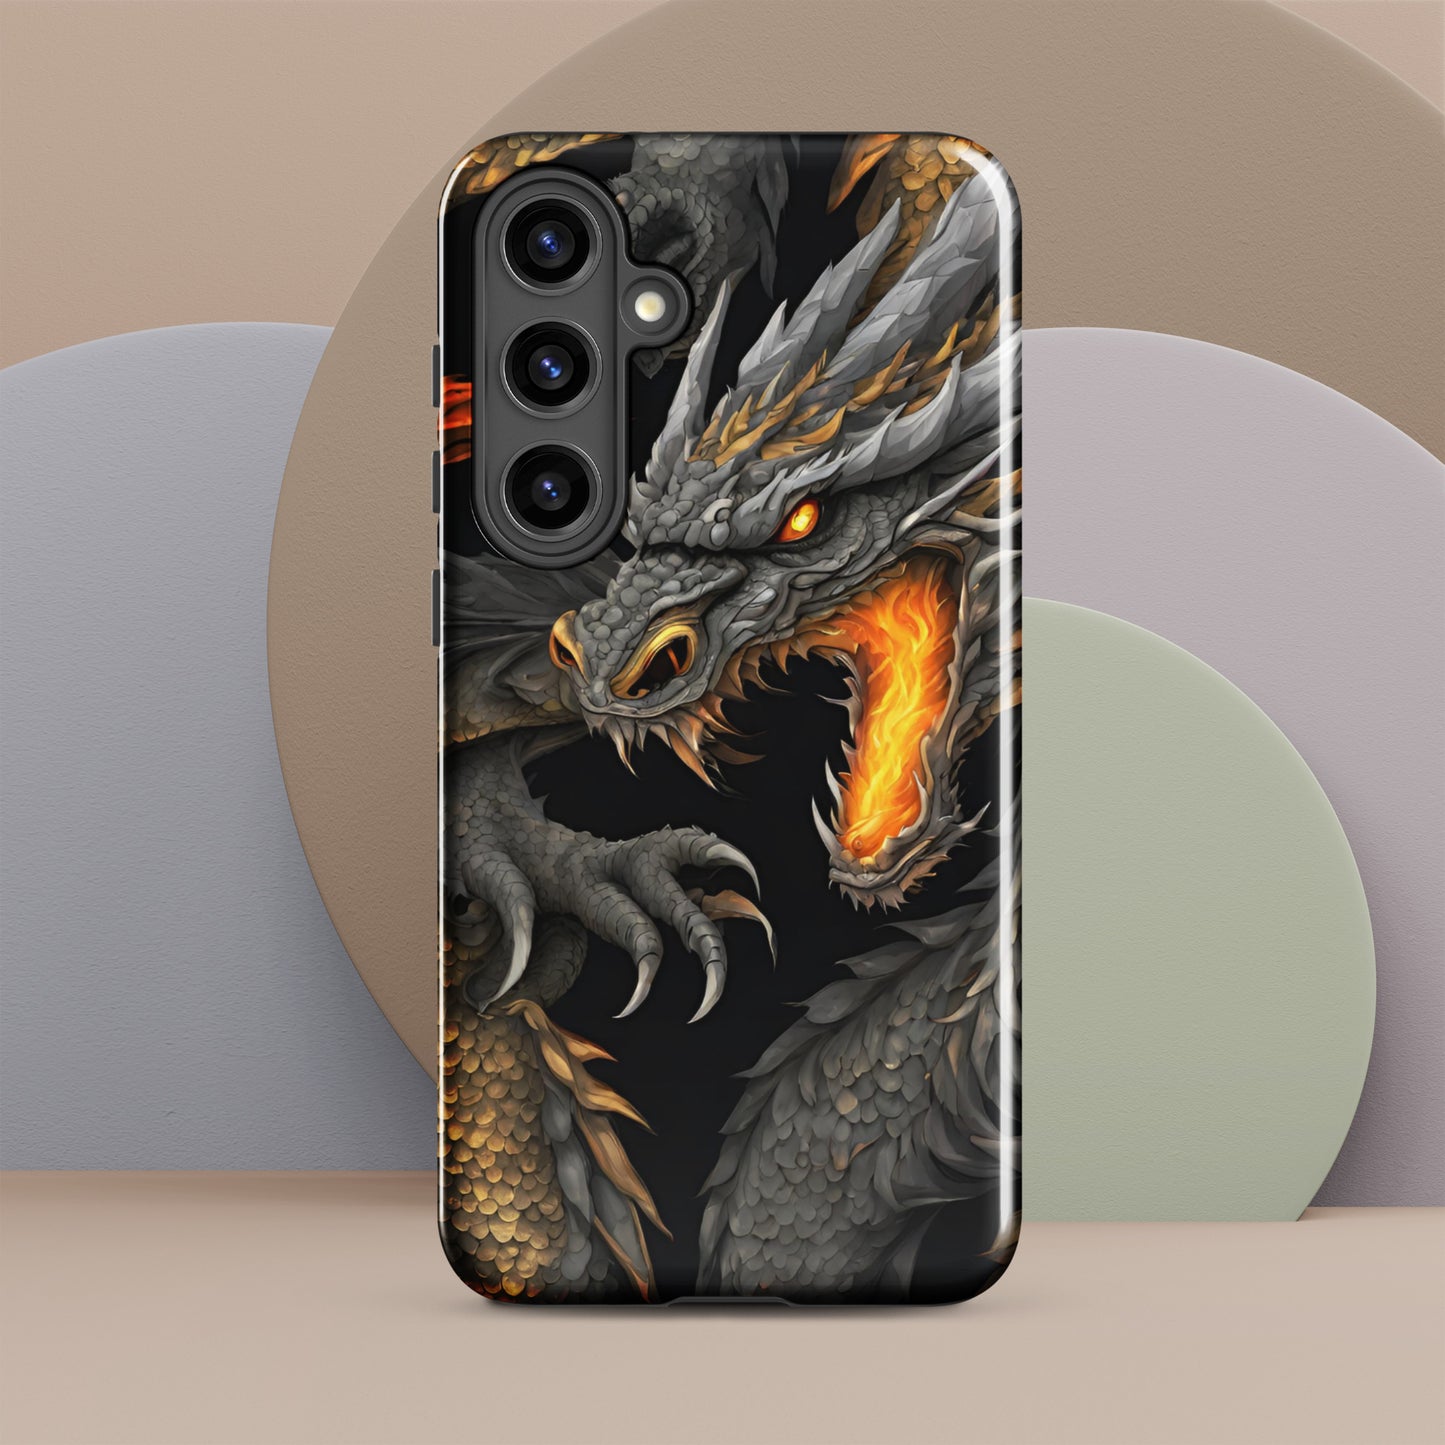 Dragon Tough case for Samsung®